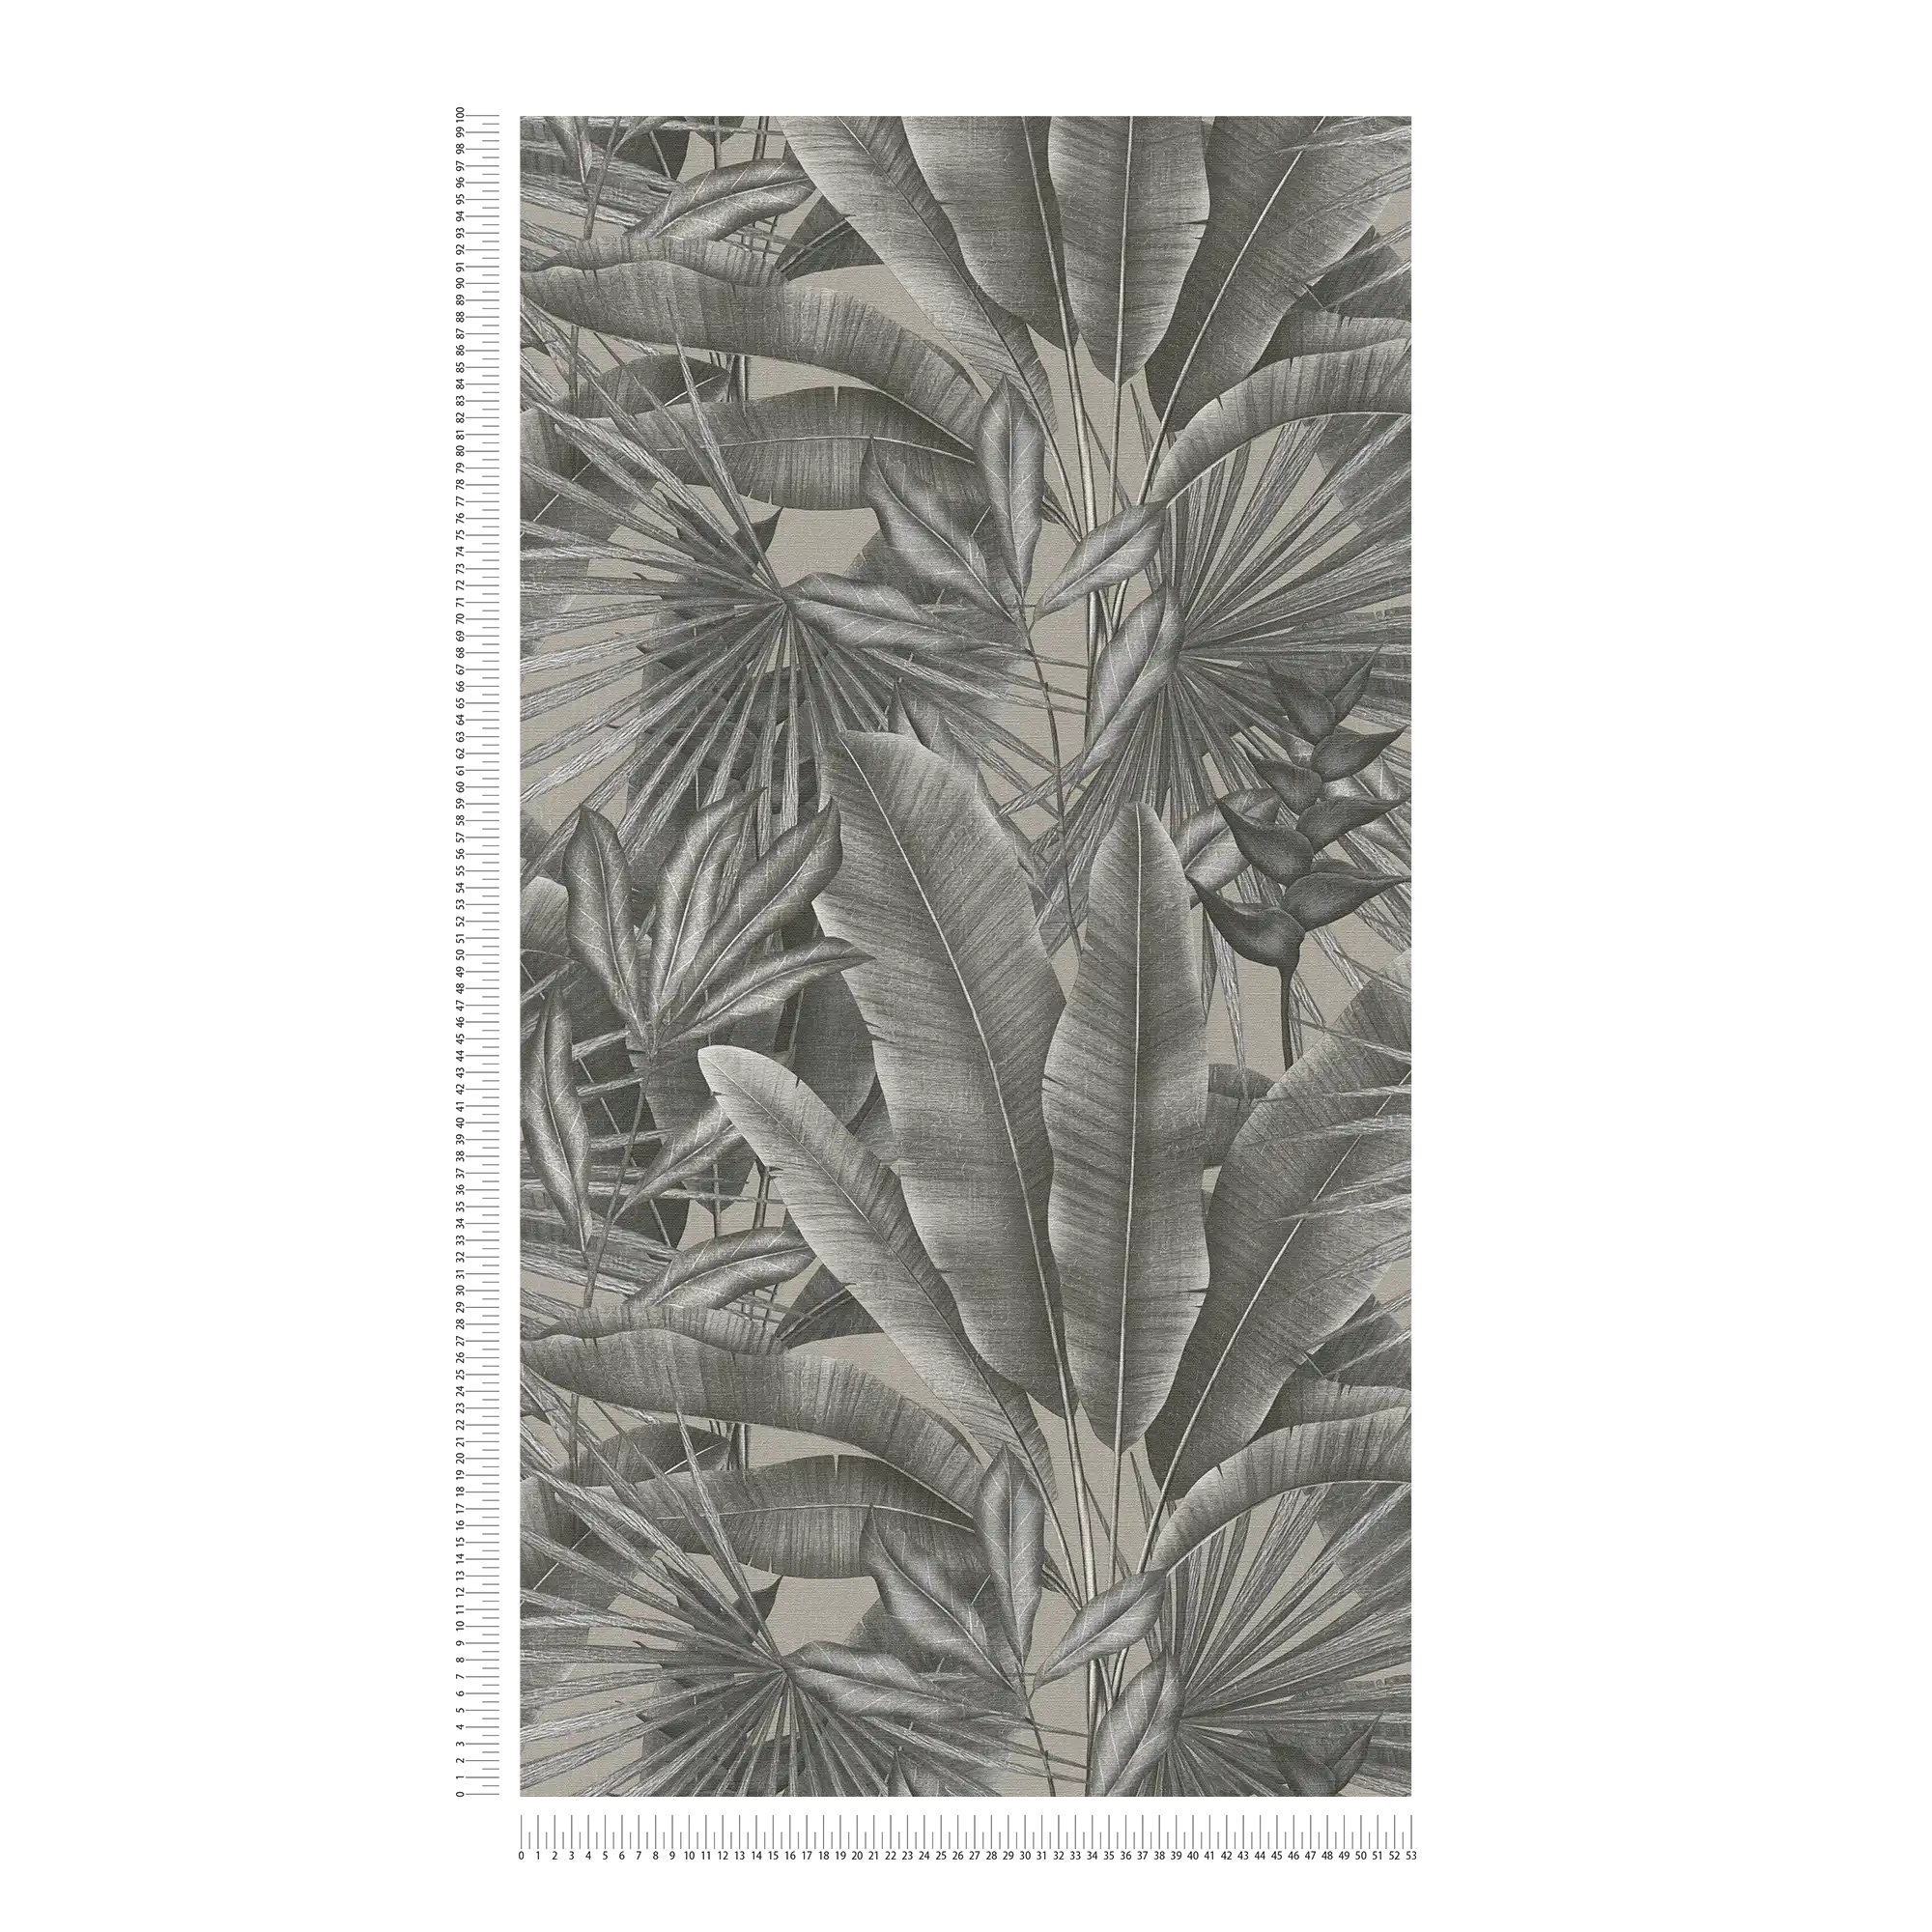             Vliesbehang met bladmotief in jungledessin - grijs, beige, zwart
        